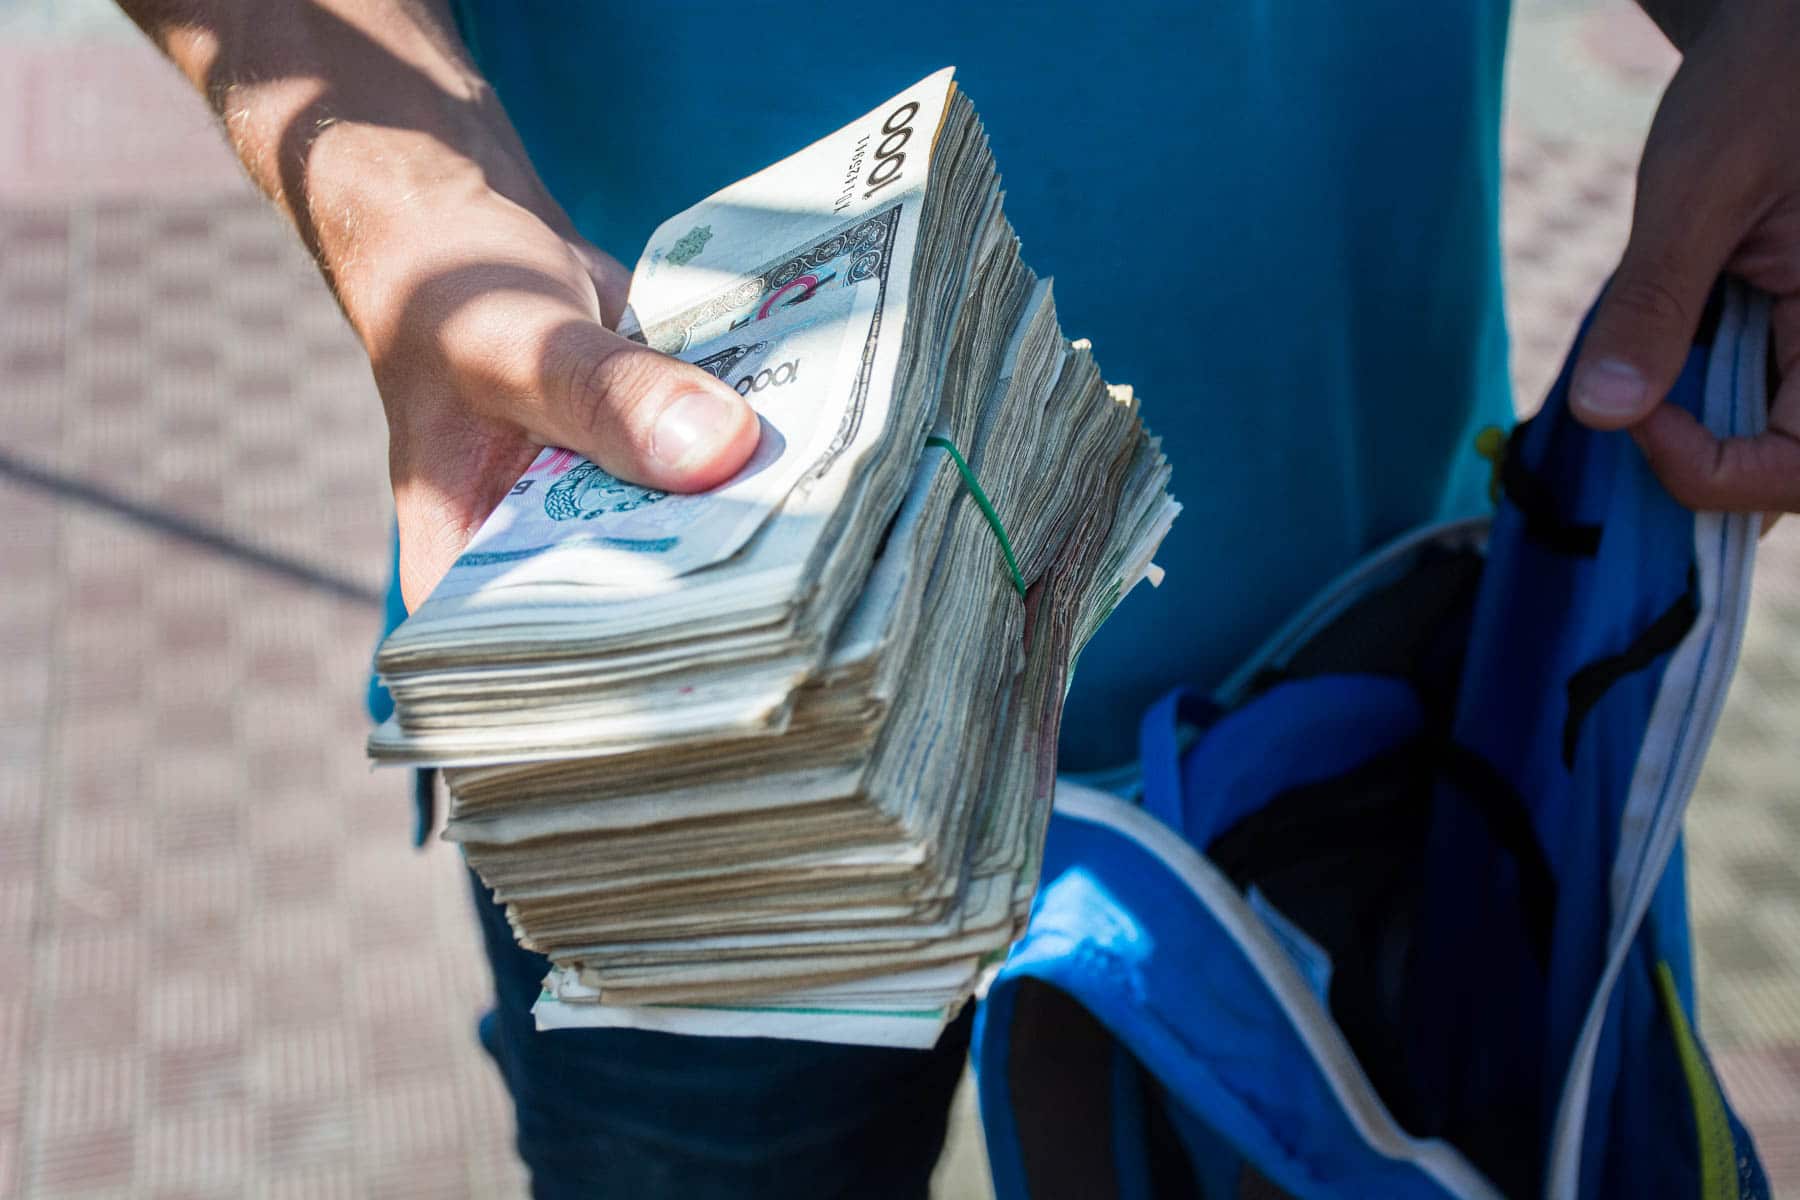 A large stack of Uzbek money